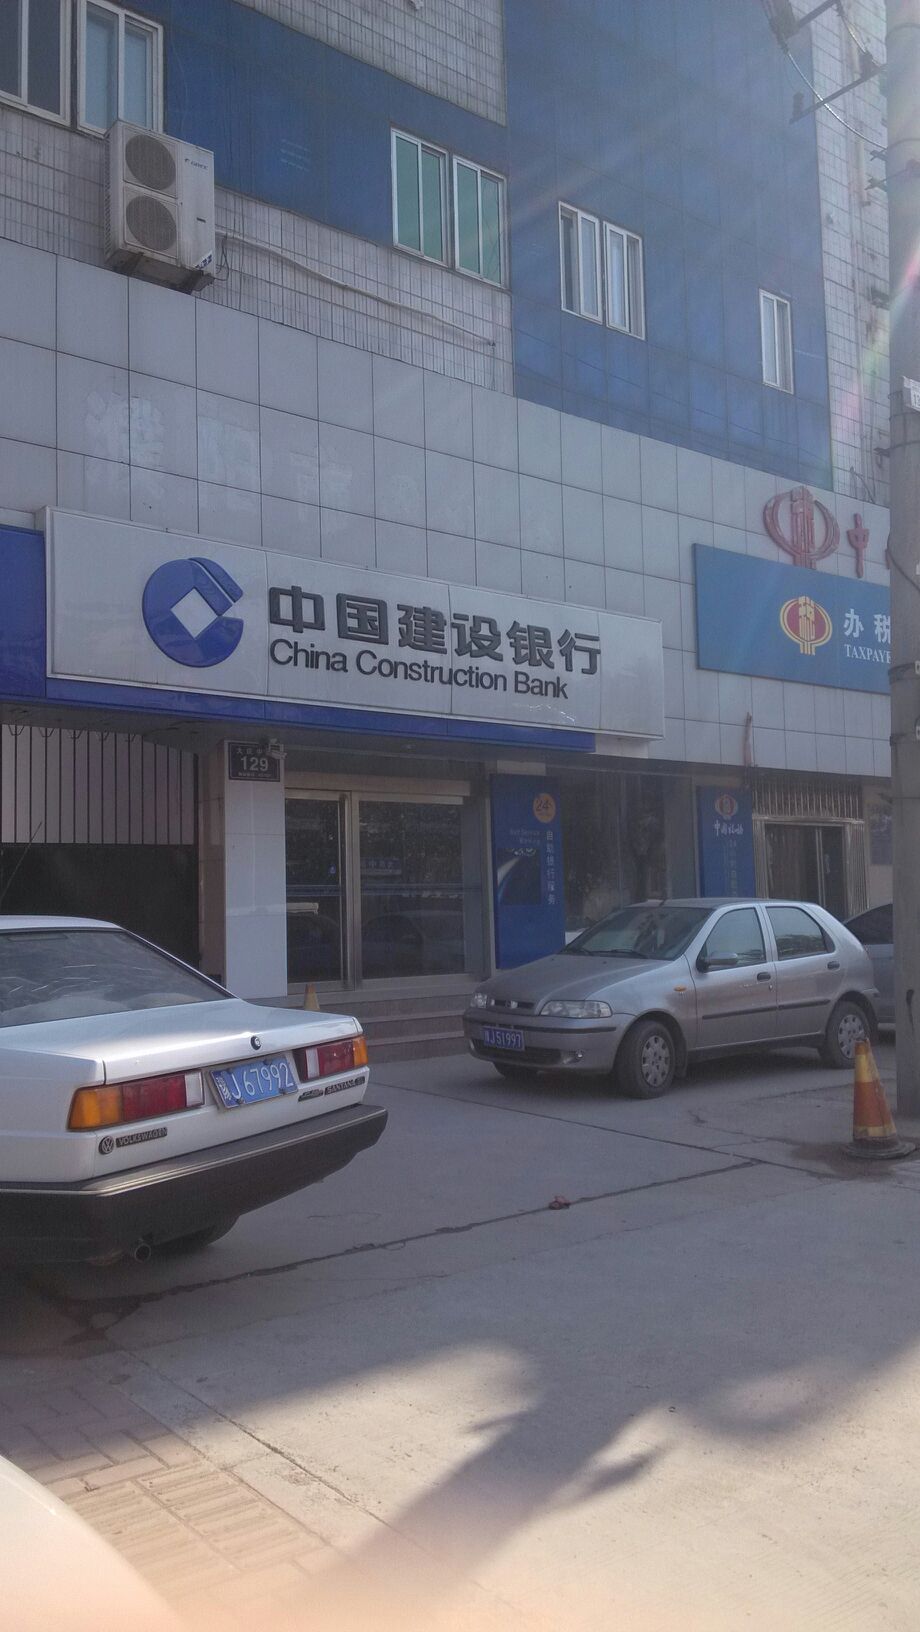 中國建設銀行24小時自助銀行服務(大慶中路店)